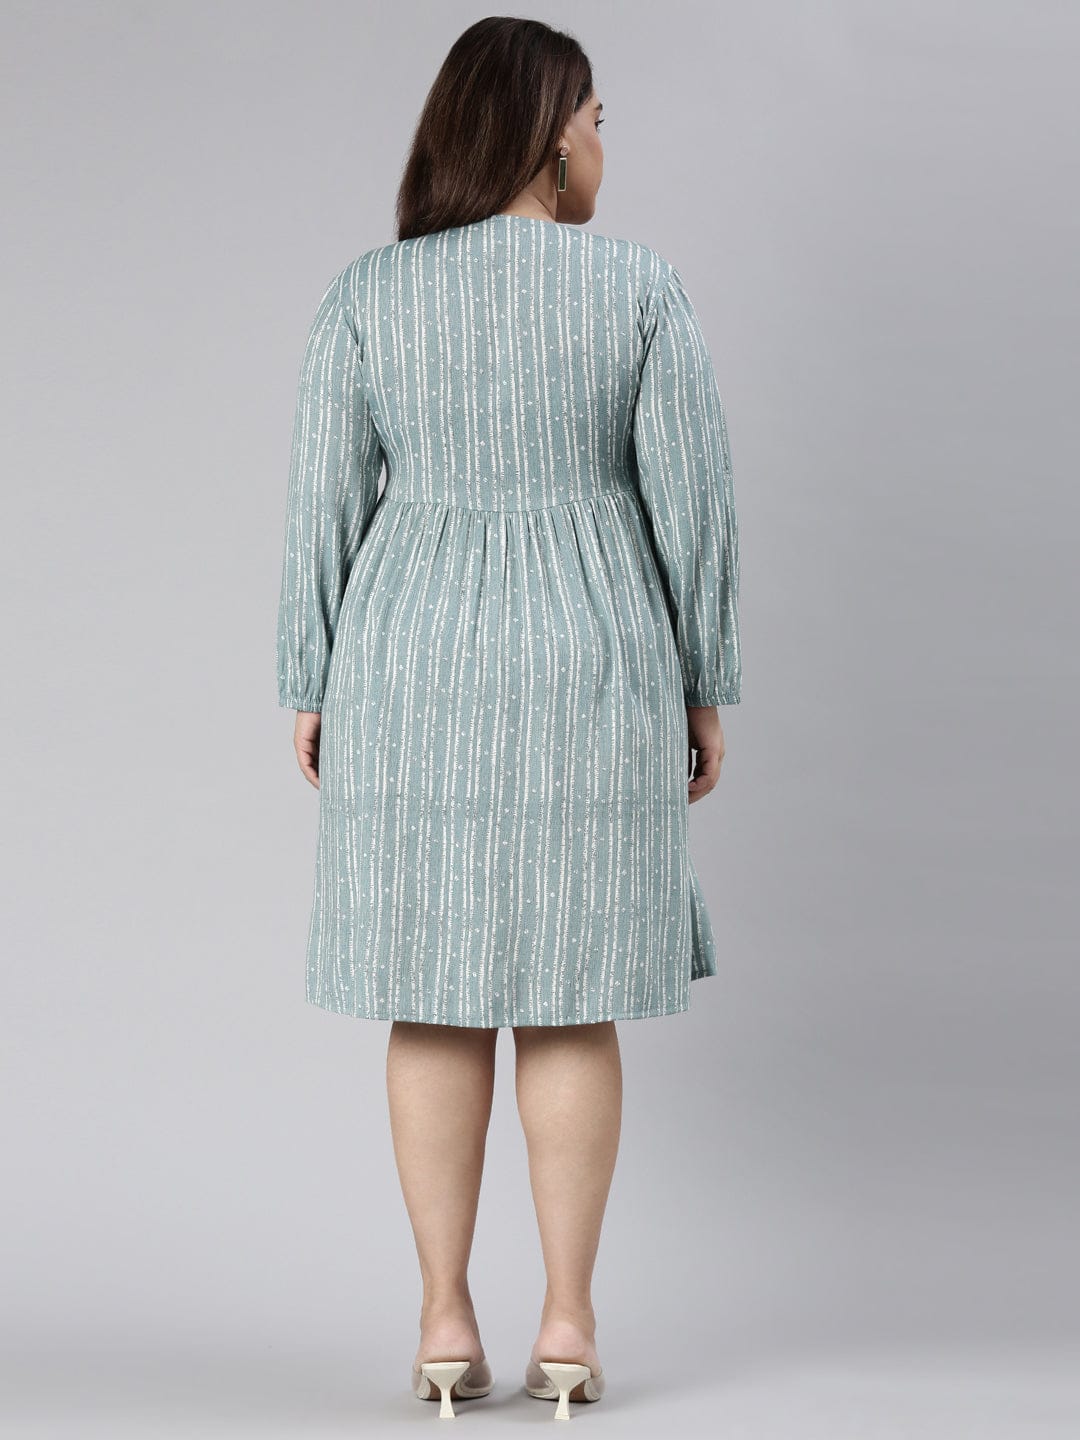 TheShaili - Women's Teal V shaped A-Line knee length dress